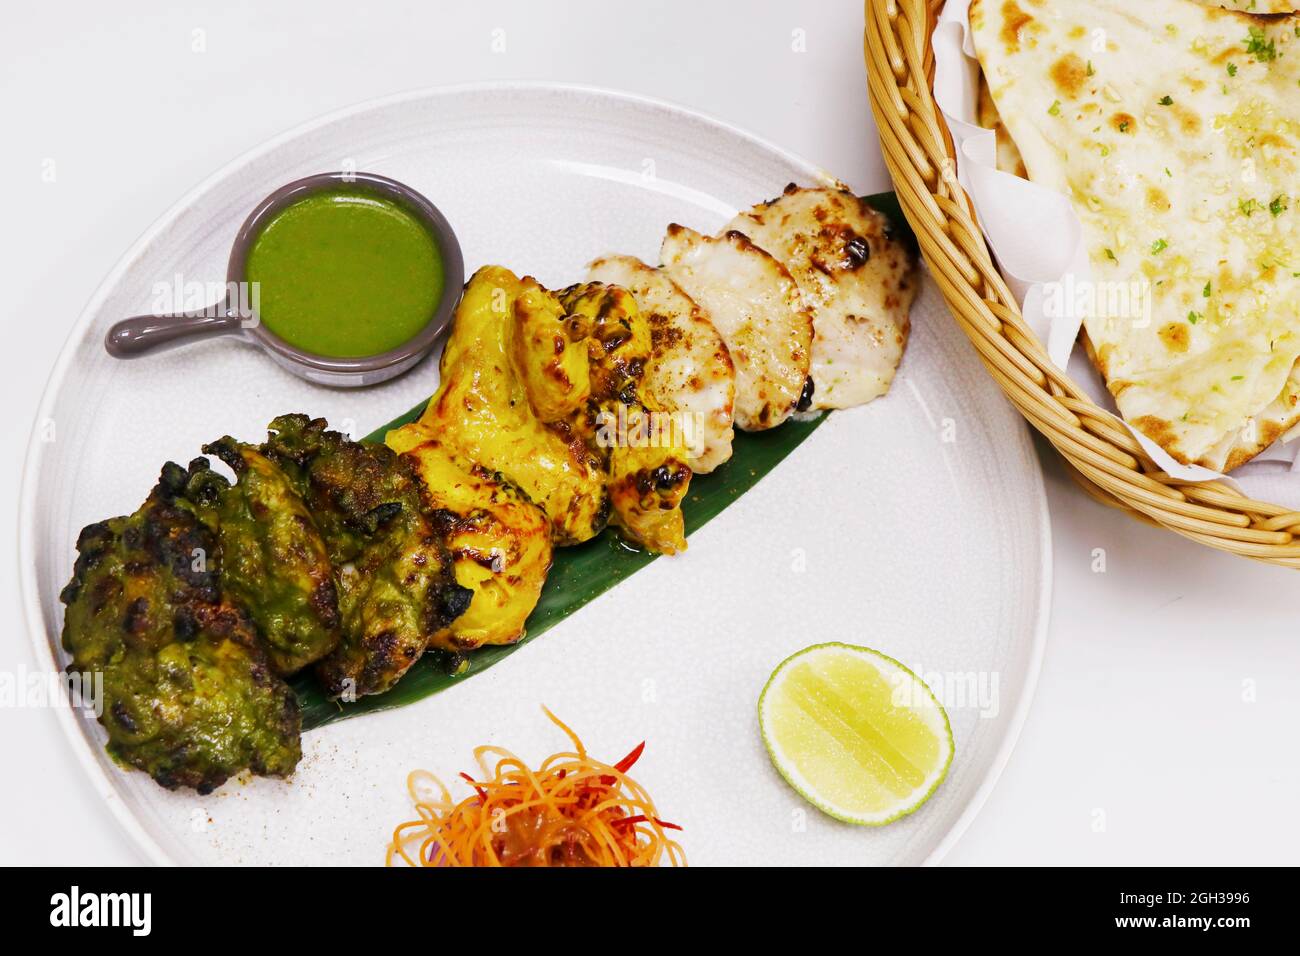 indische Spezialitäten gewürzt Tandoori Chicken Tikka, Creme, Safran und Spinat auf Basis marinierter Hühnerwürfel Stockfoto